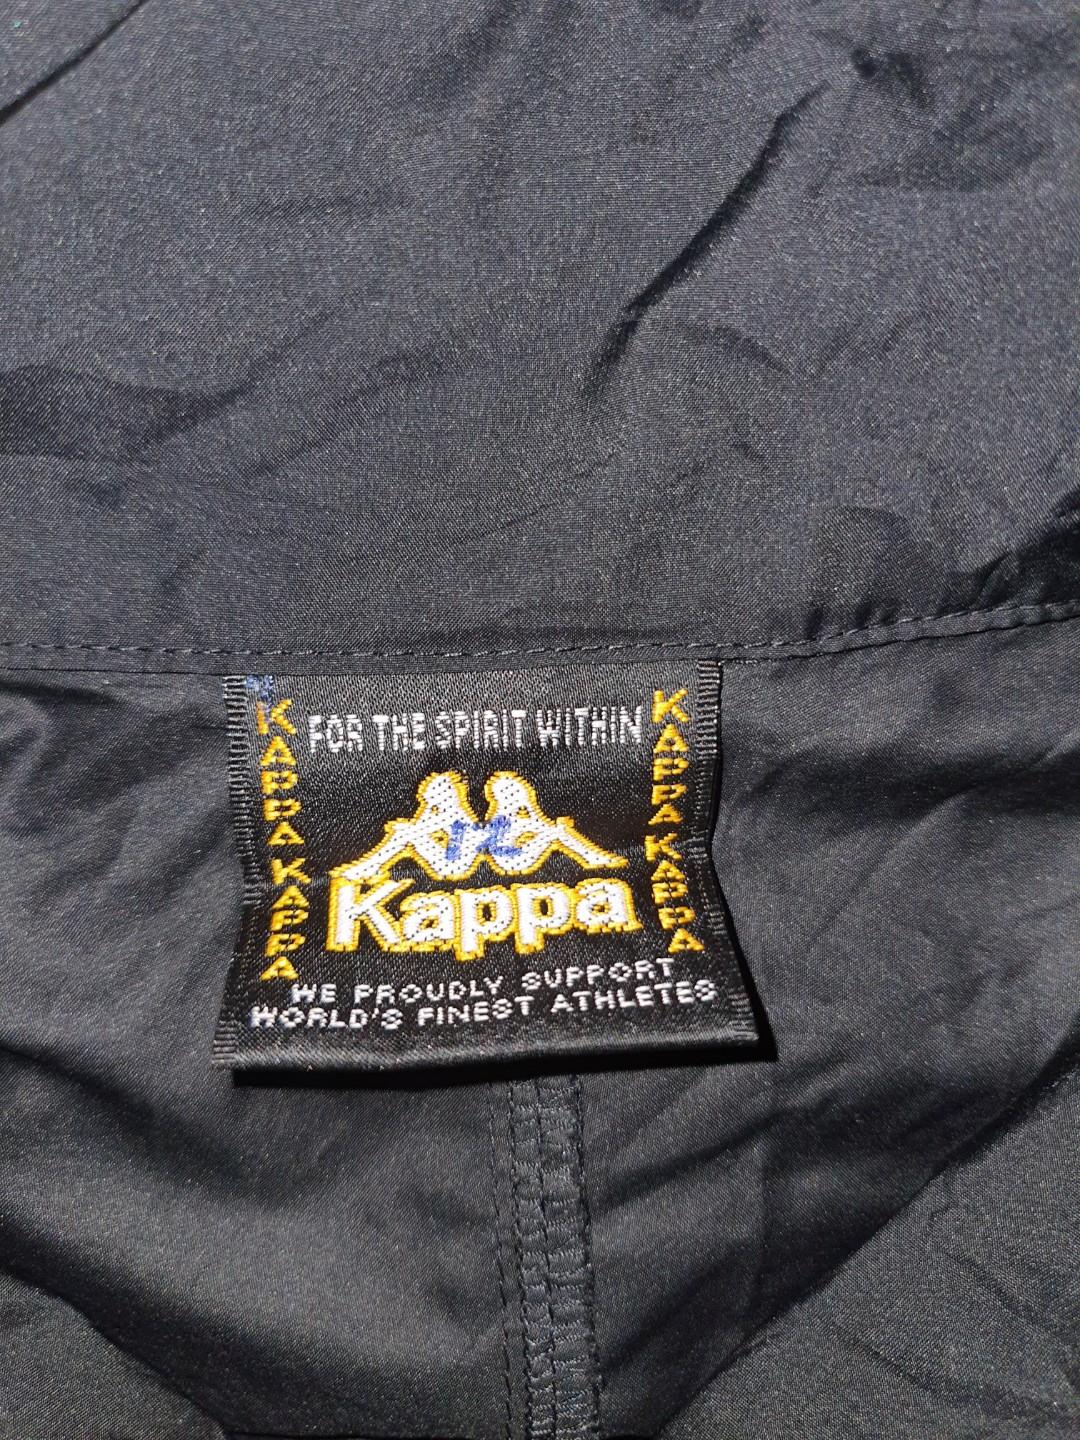 KAPPA [EPIC BY NEXTEC] RARE WINDBREAKER, Men's Fashion, Coats, Jackets ...